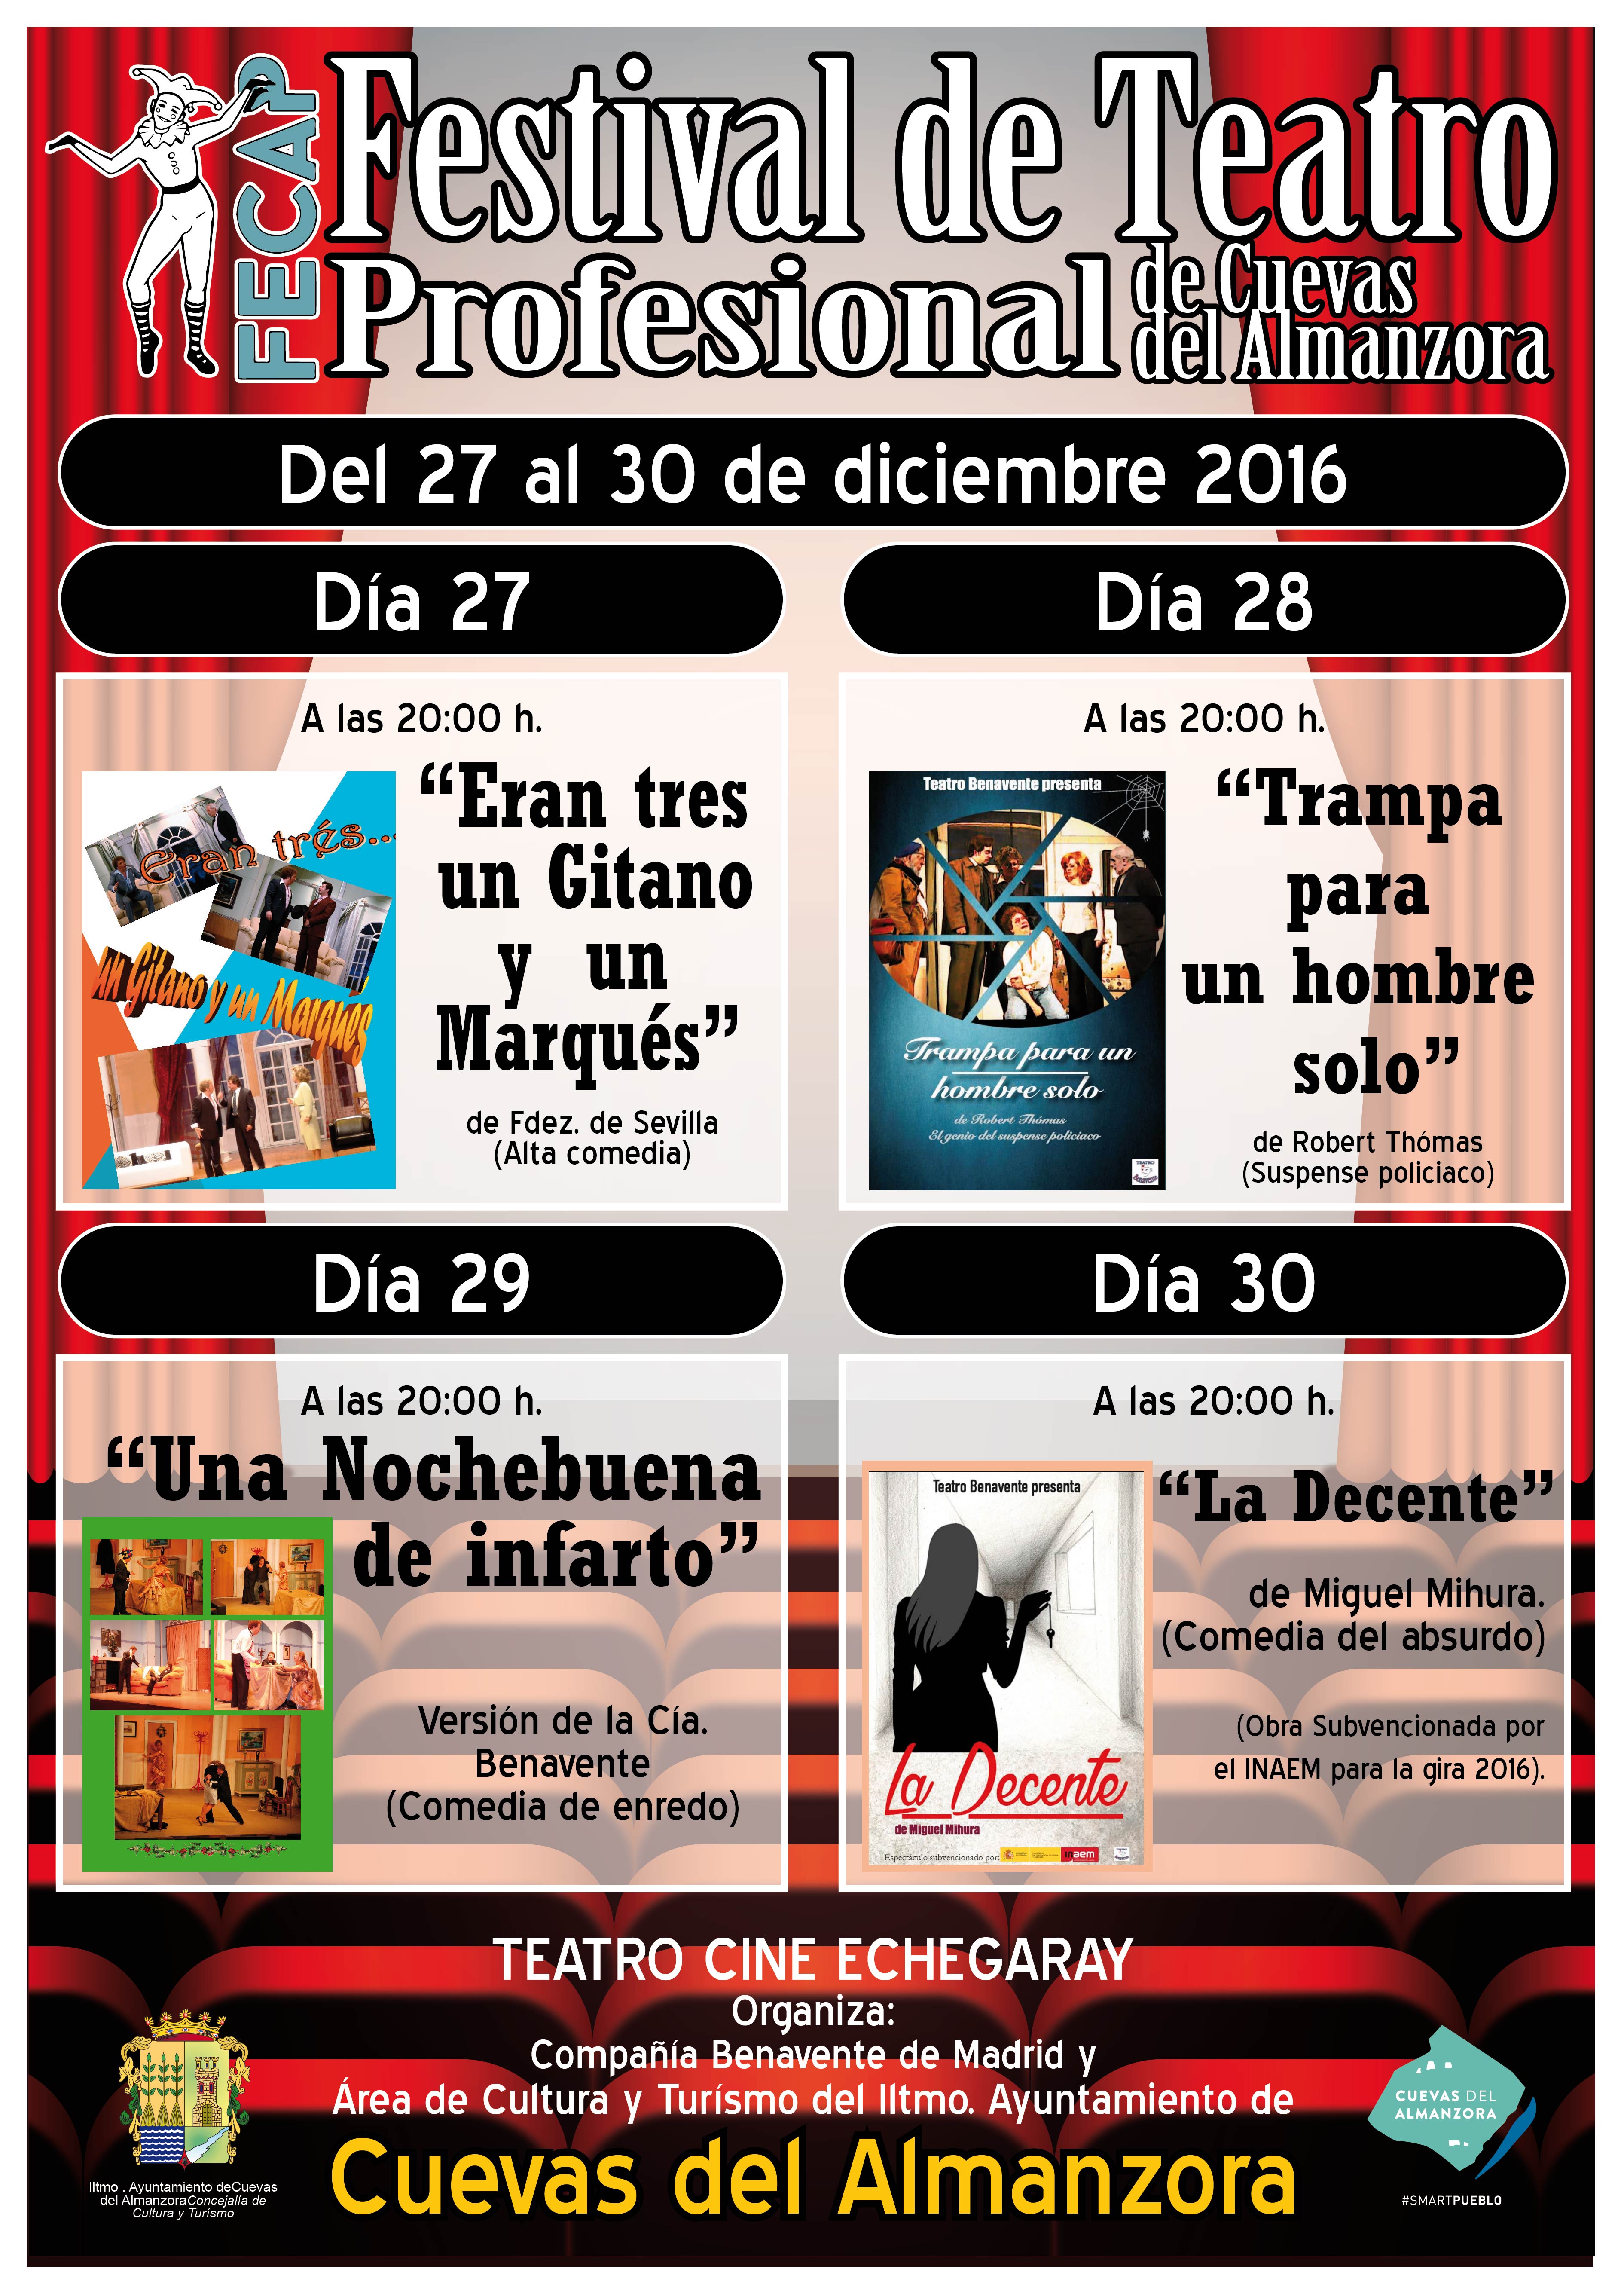 FESTIVAL DE TEATRO PROFESIONAL DE CUEVAS DEL ALMANZORA DEL 27 AL 30 DE DICIEMBRE 2016